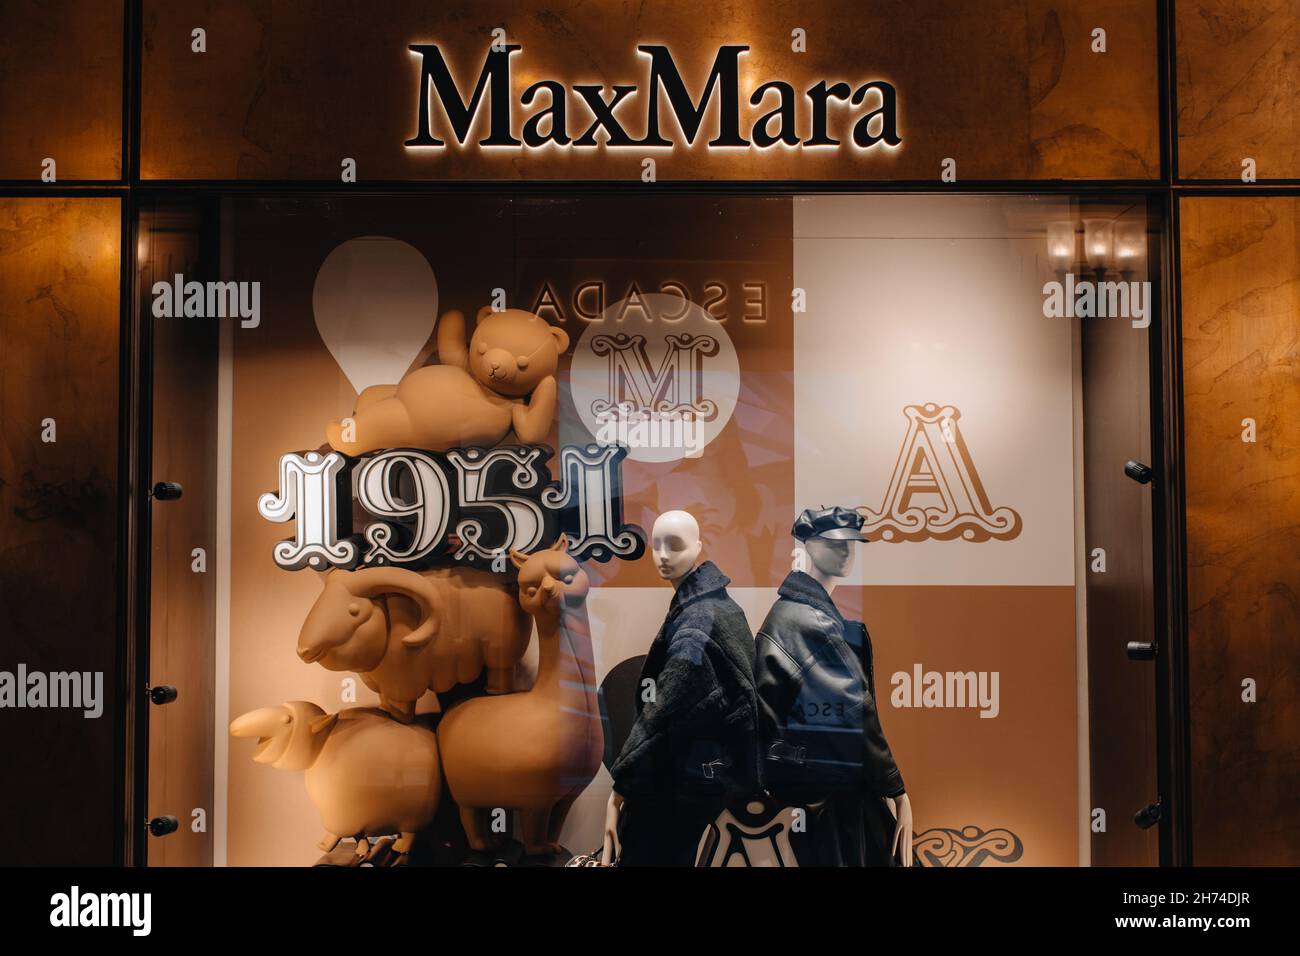 MANNEQUINS MAX MARA dans une vitrine habillée dans une collection hiver tendance et élégante.Manteau et chapeau noirs Banque D'Images